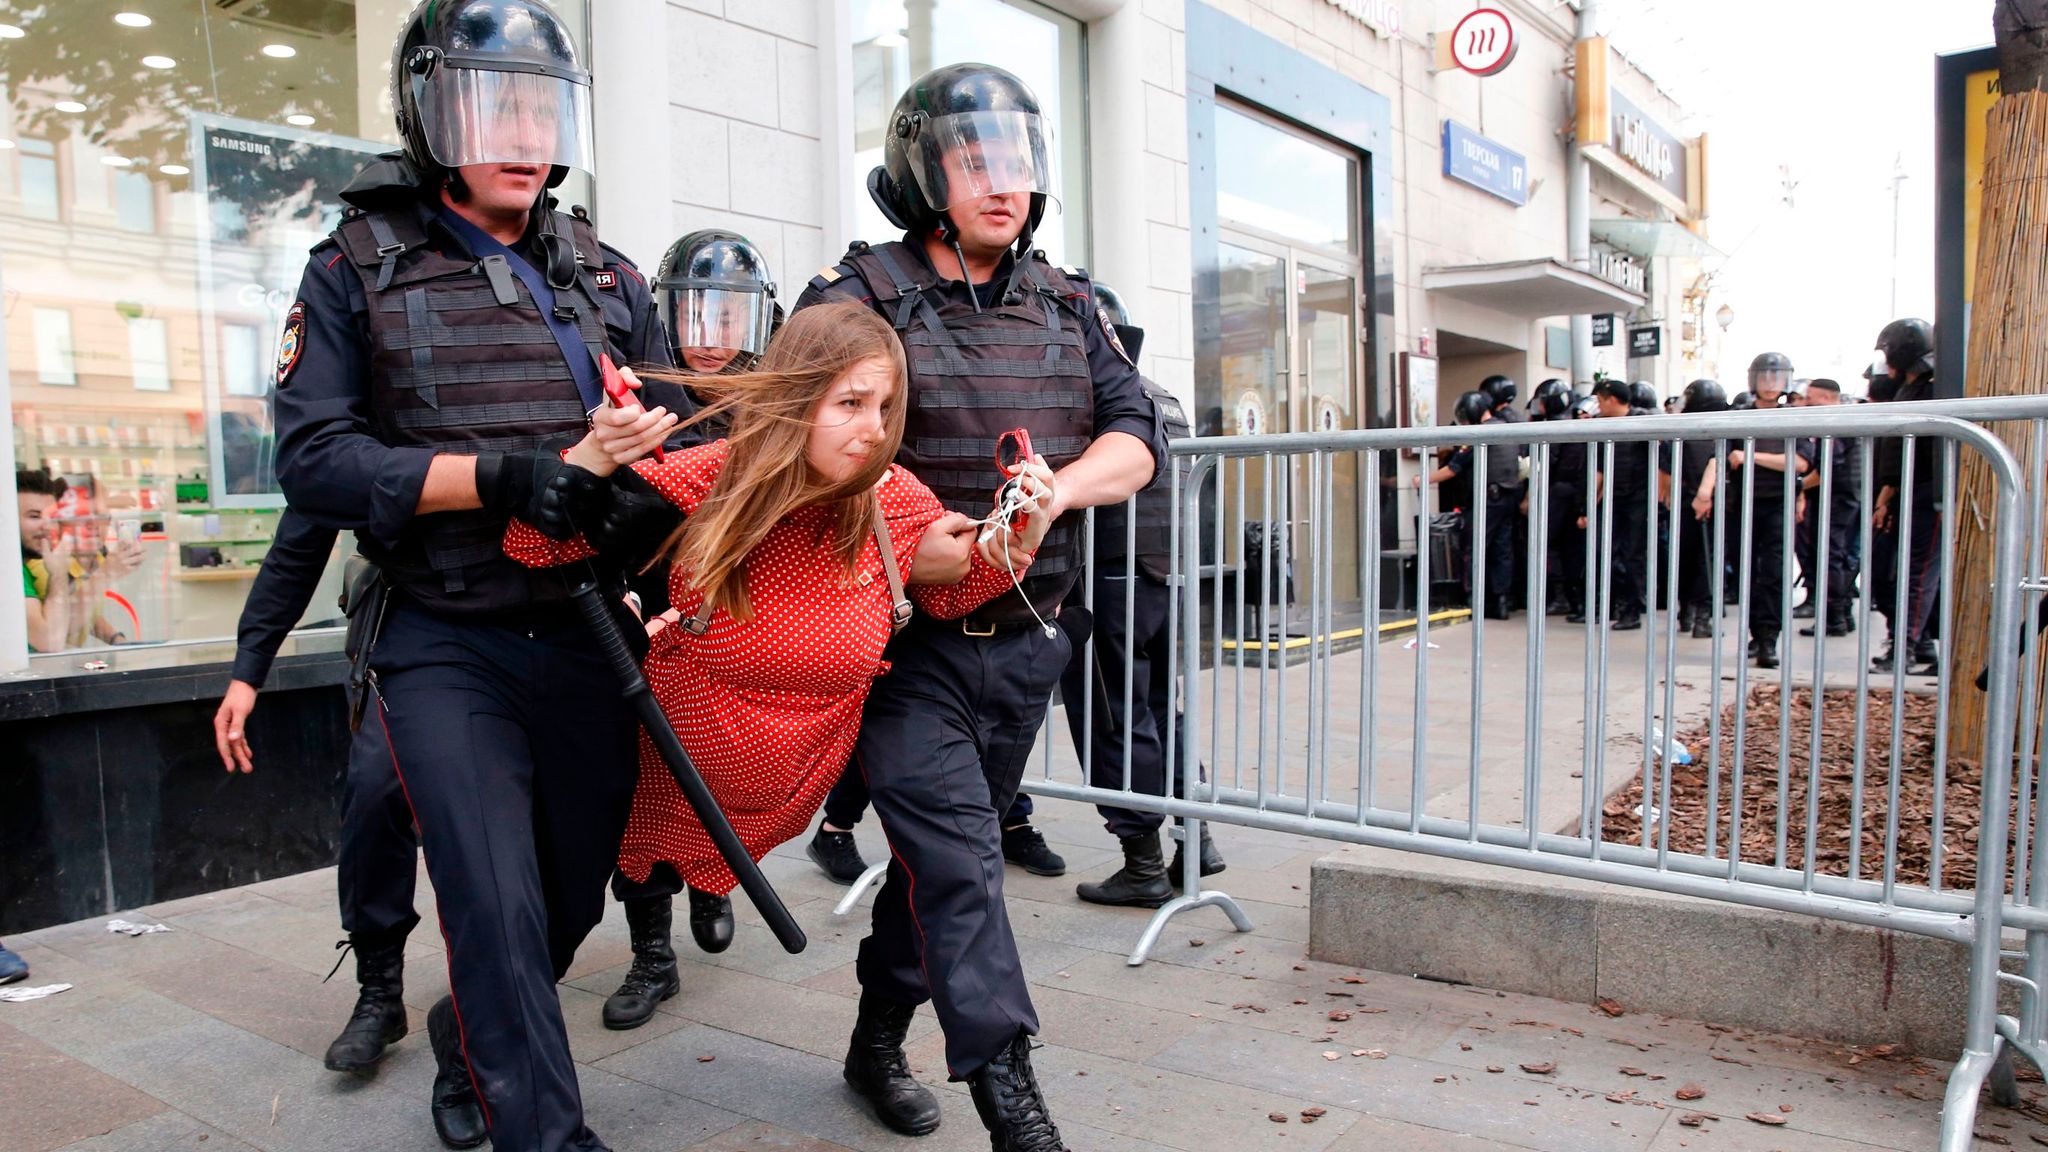 Почему люди бьют других людей. Задержание на митинге в Москве. Полицейские бьют людей на митинге.